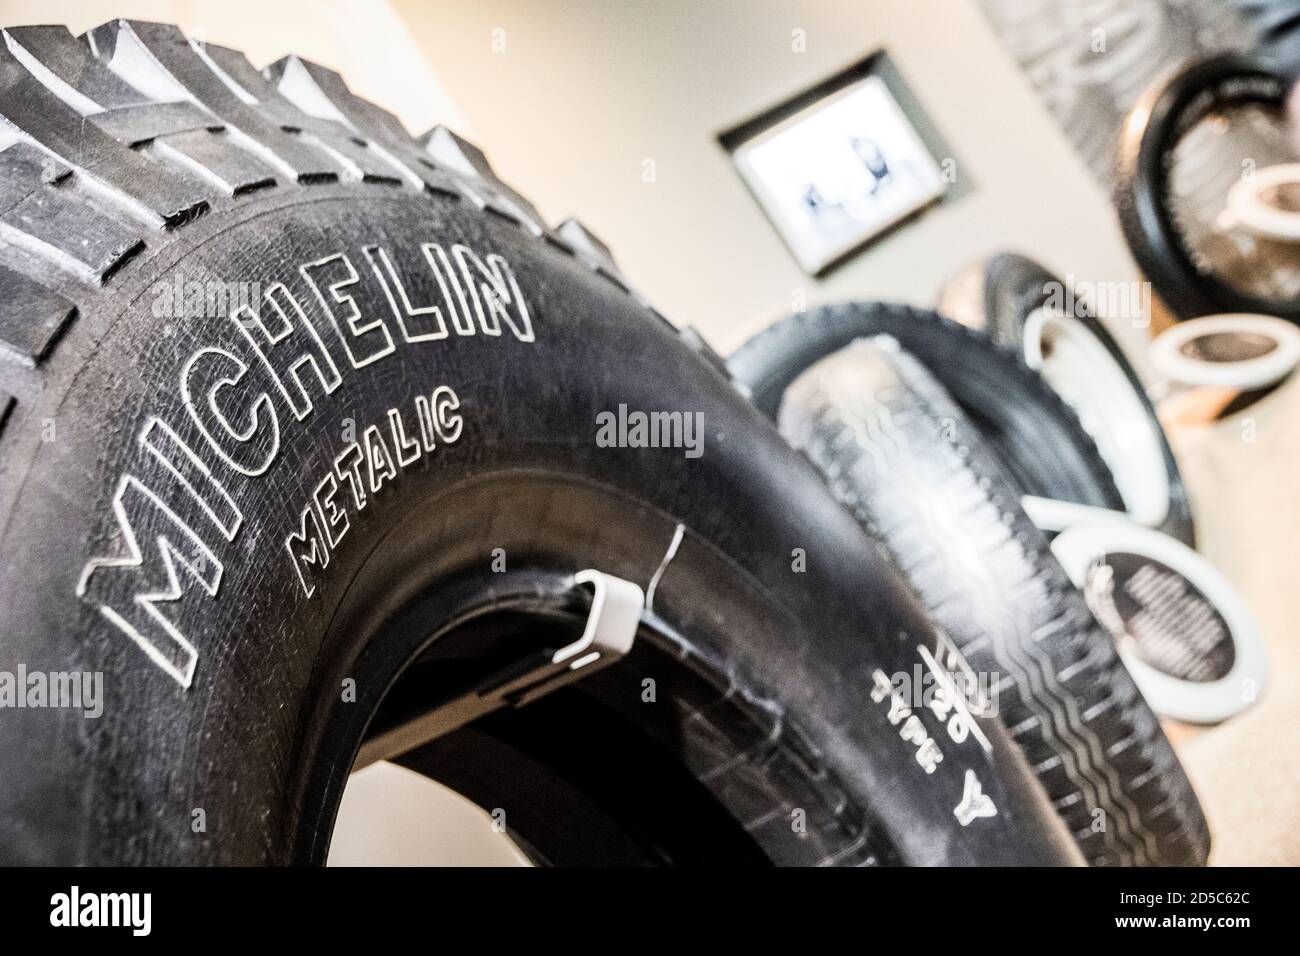 hoher Alamy – und Auflösung Michelin -Bildmaterial reifen logo in -Fotos